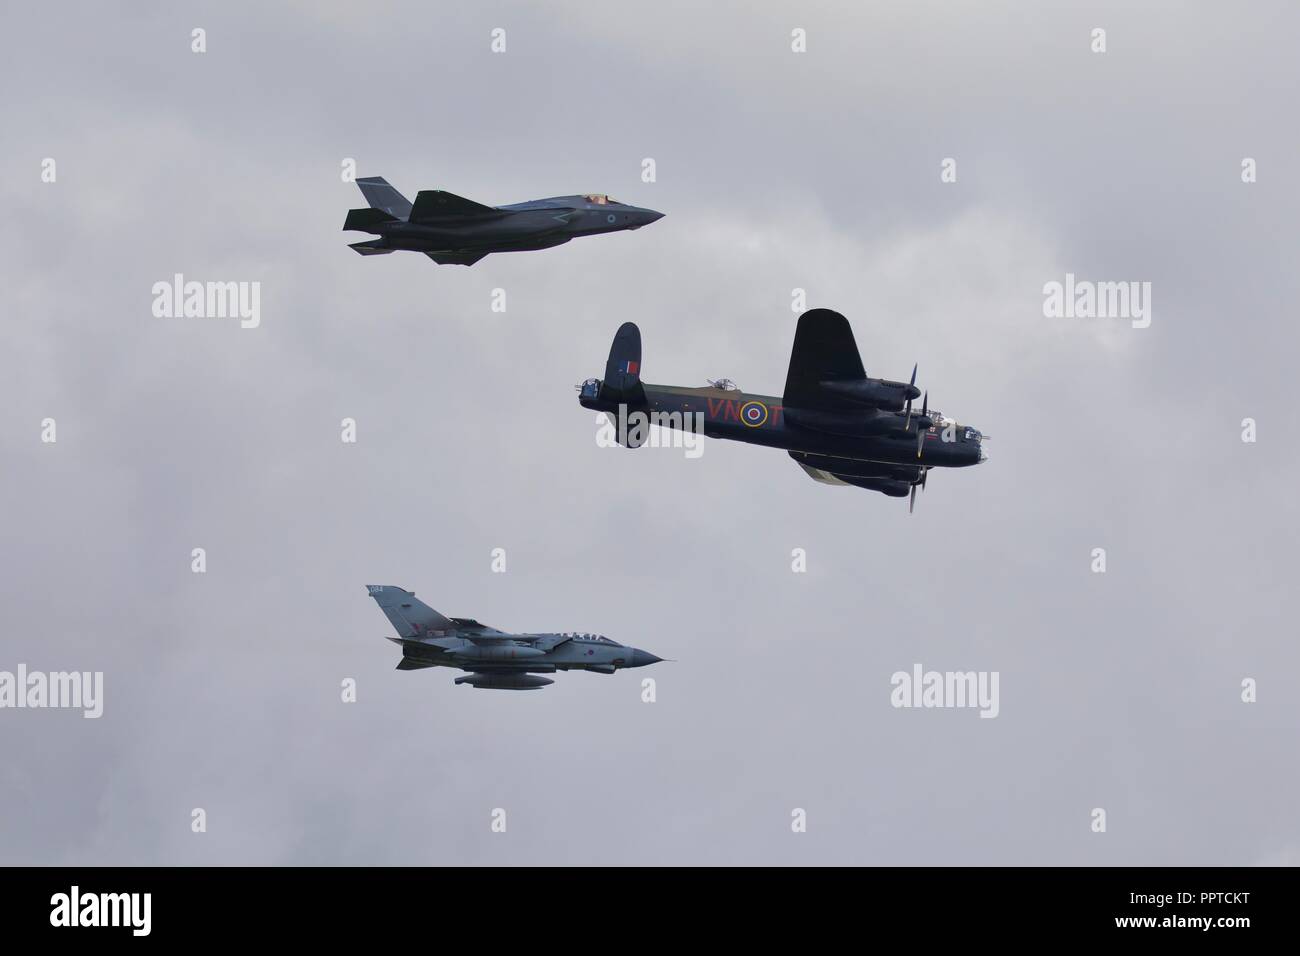 617 Squadron Vergangenheit, Gegenwart und Zukunft flypast Avro Lancaster, Tornado GR4, F-35 Lightning im Jahr 2018 die Schlacht um England Airshow am IWM Duxford Stockfoto